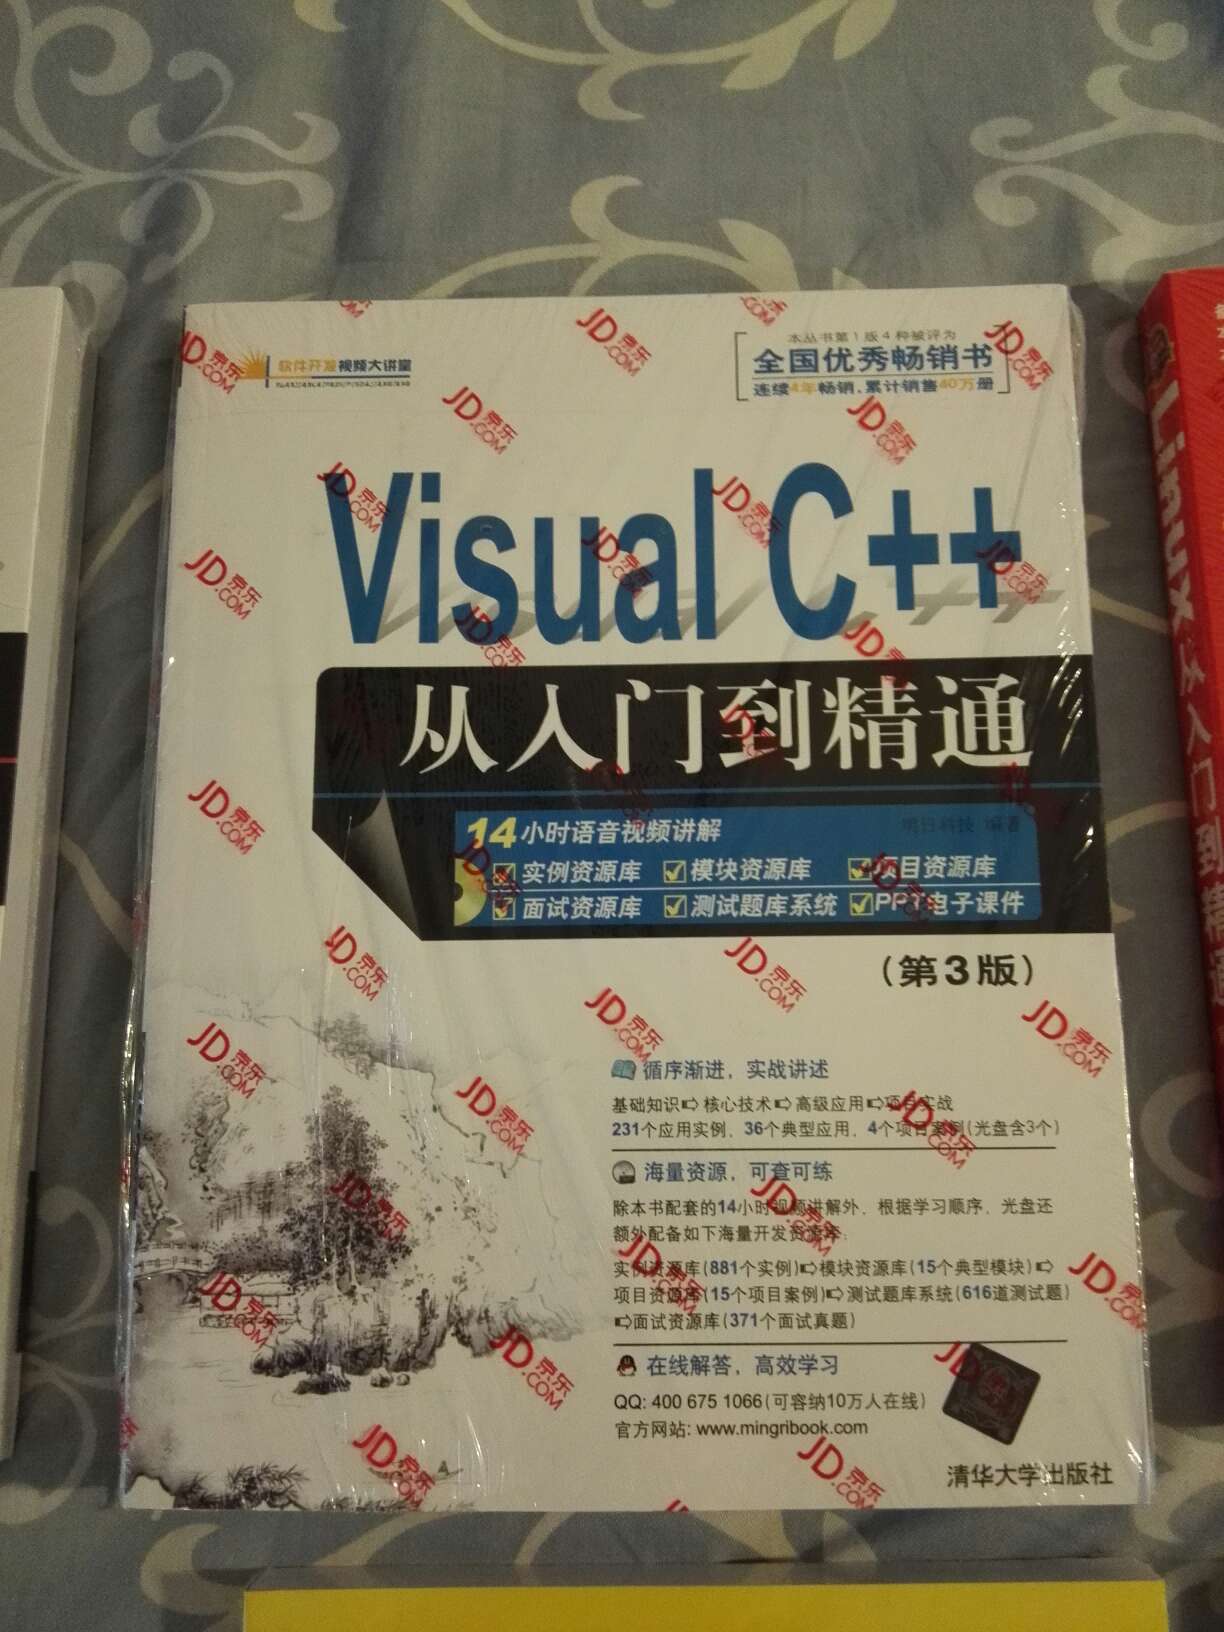 C++，想学这种语言，不知道有没有结果。